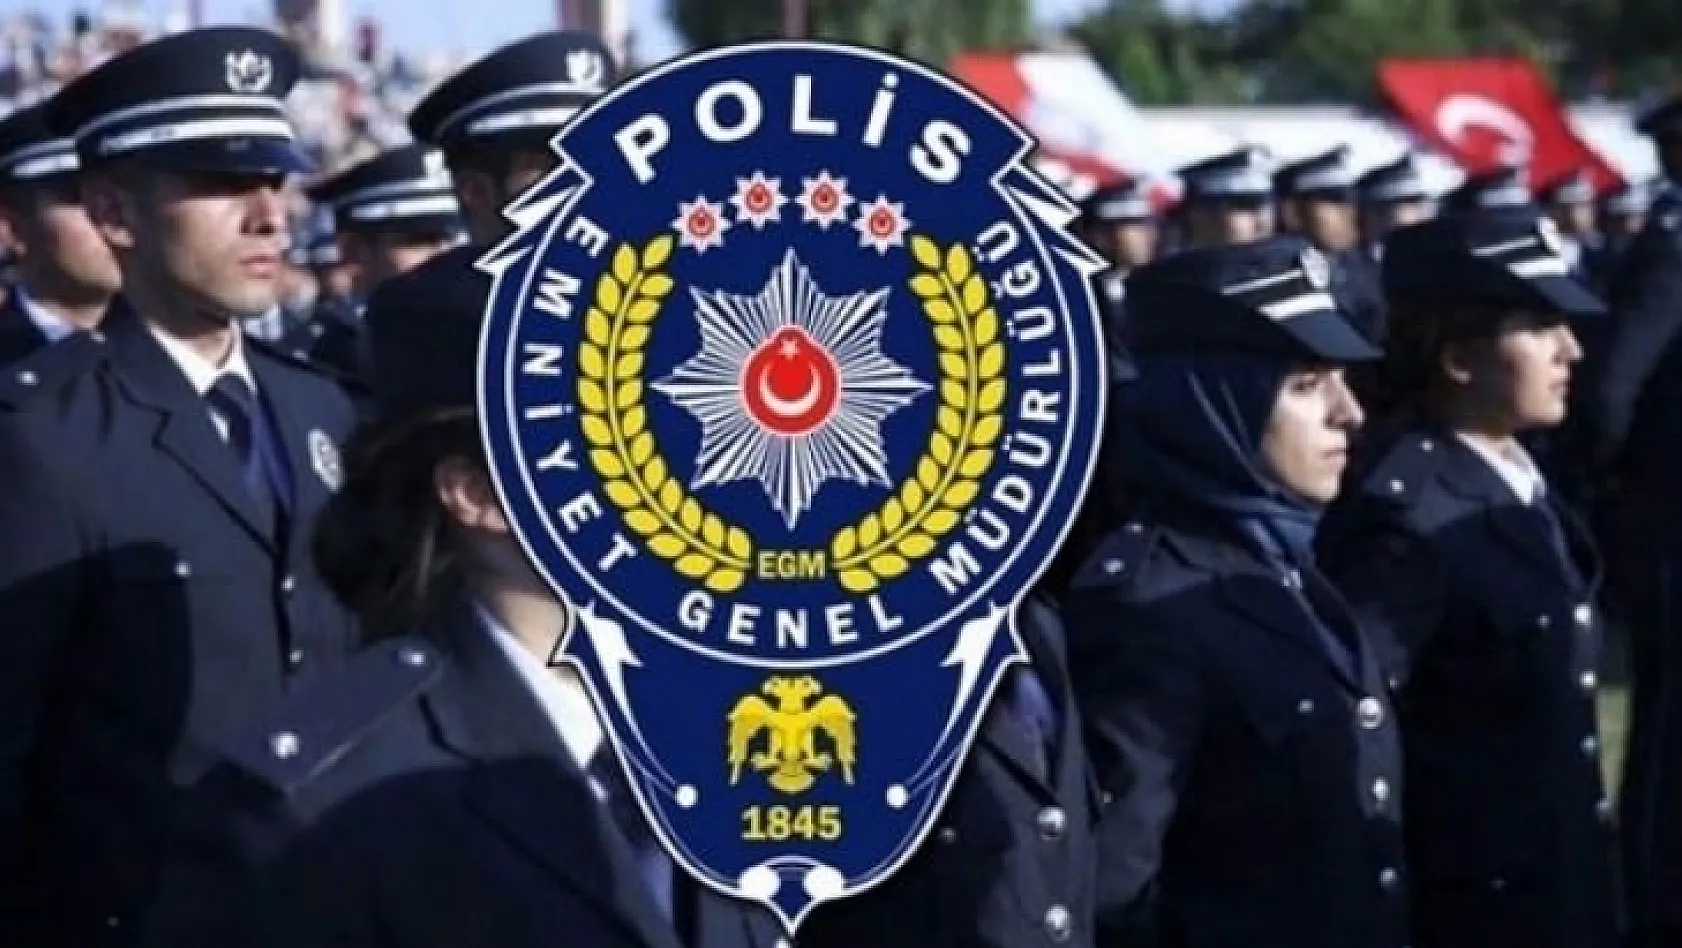 25 Bin Polis Alınacak